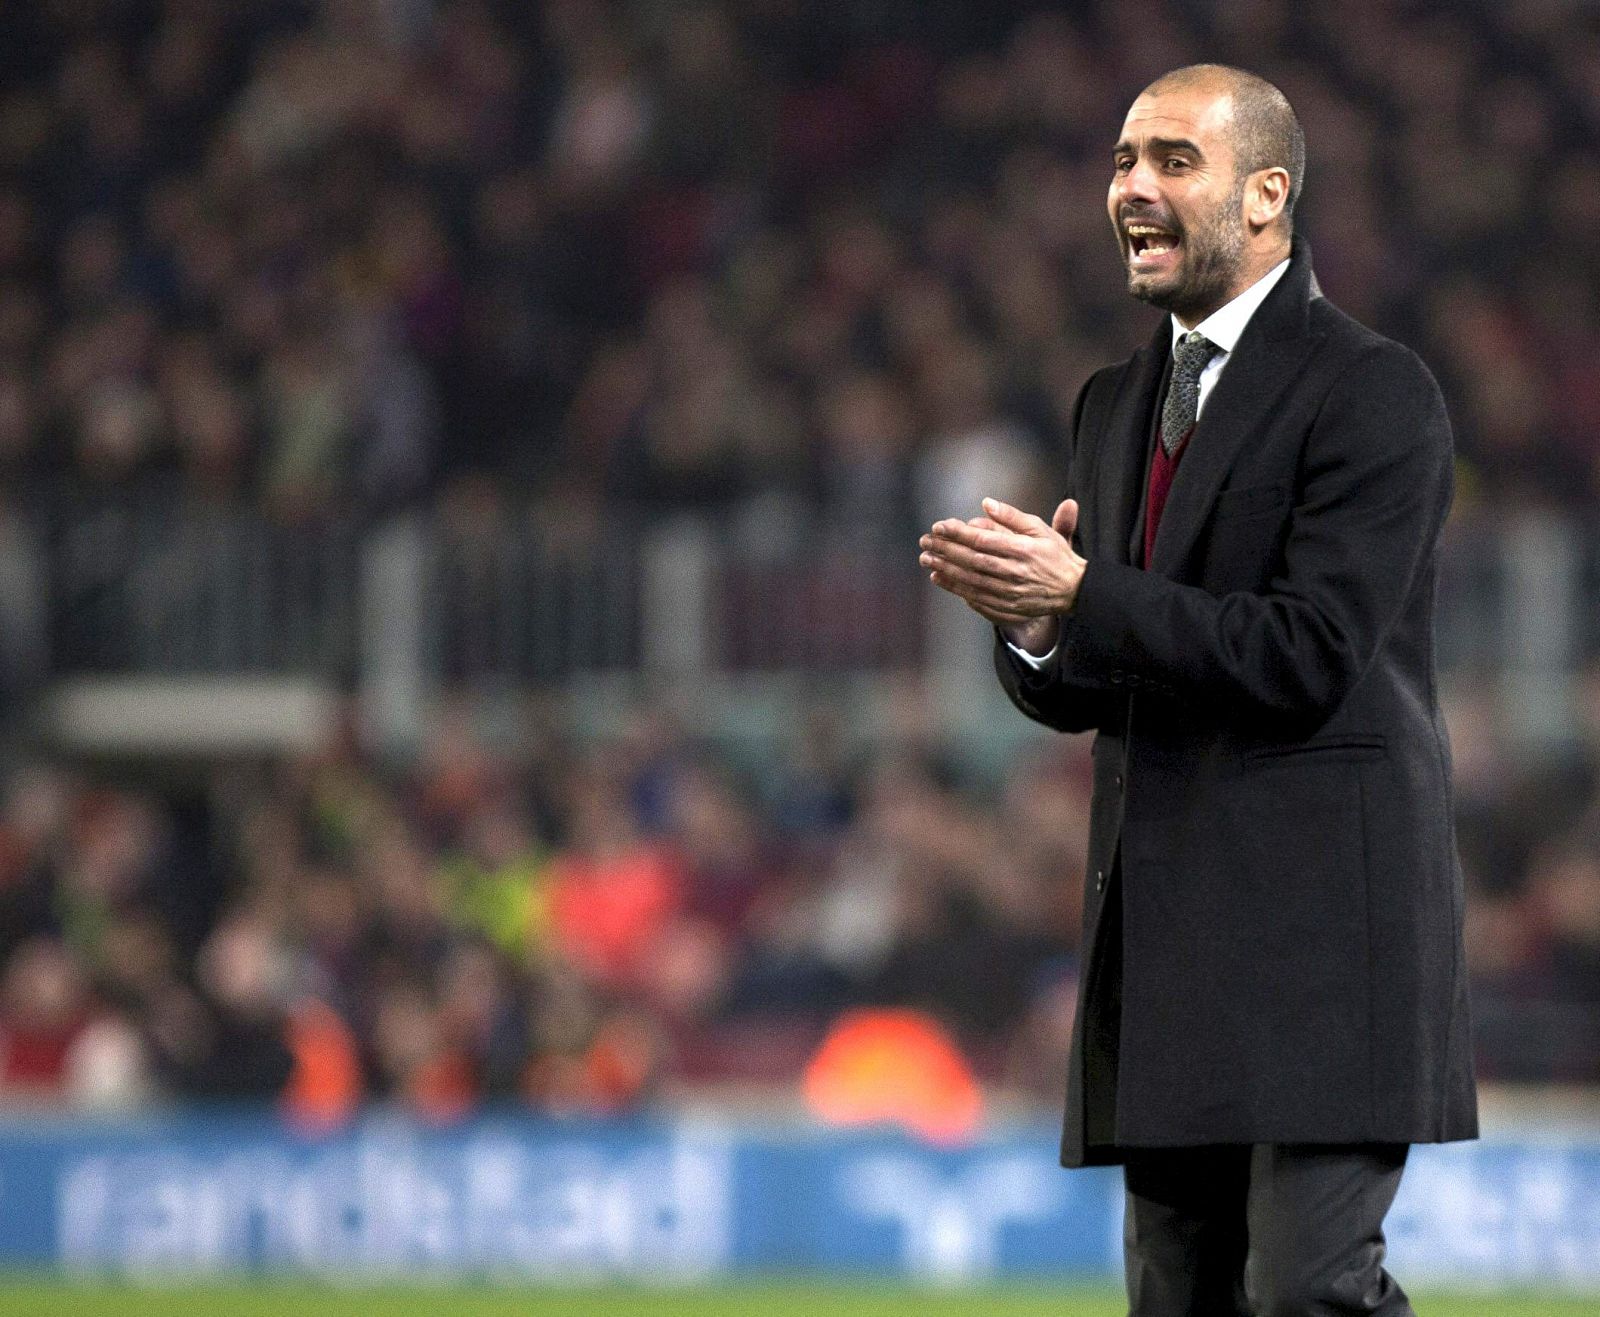 El entrenador del FC Barcelona, Pep Guardiola, da instrucciones durante un partido